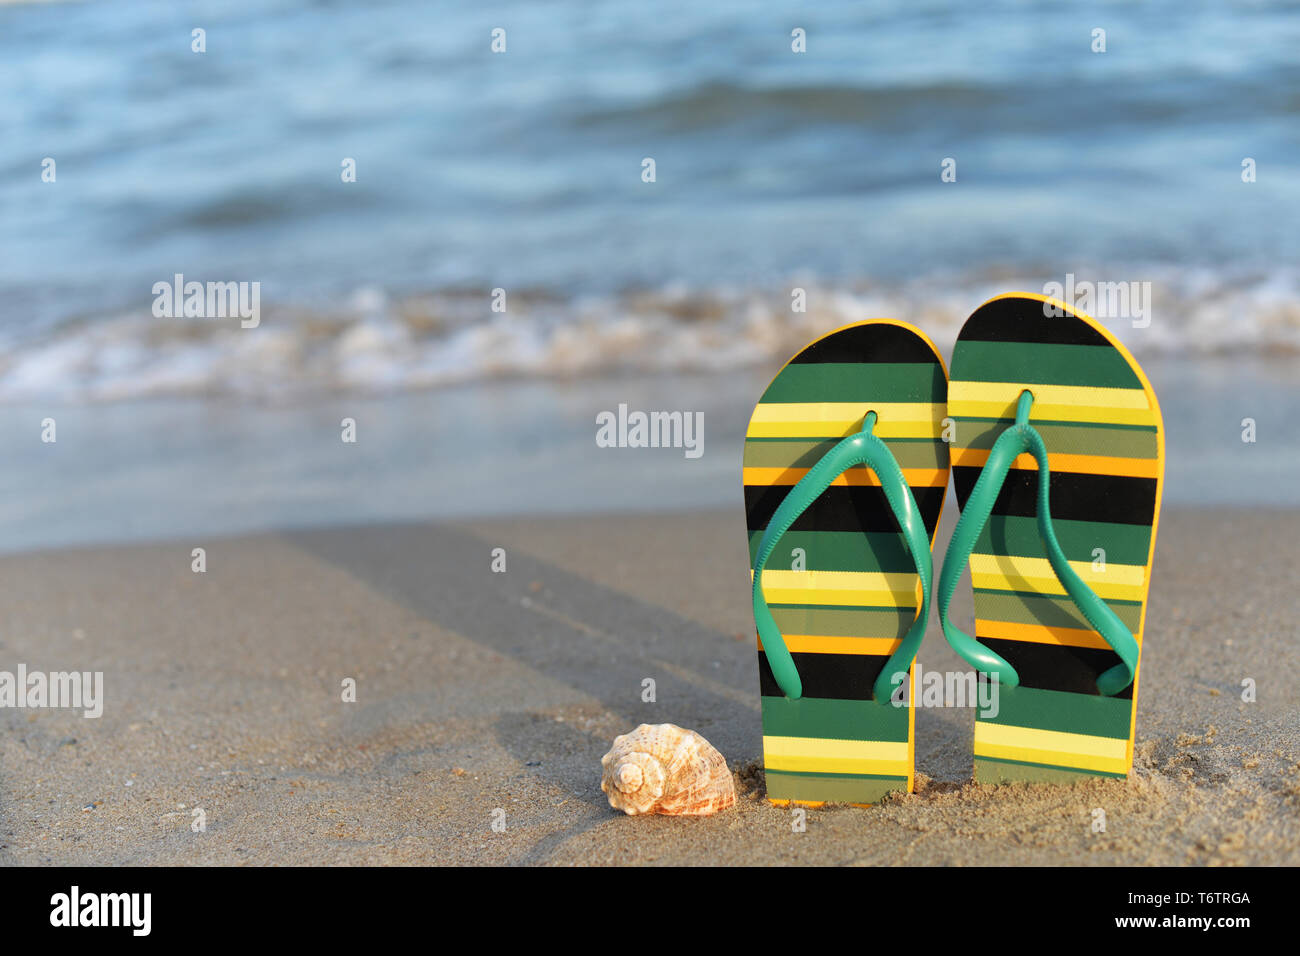 Arte Abstracto Piscina Tribal Print Zapatillas Flip Flop Inicio Zapatos Zapatos para hombre Sandalias Chanclas Playa Vacaciones de Verano 